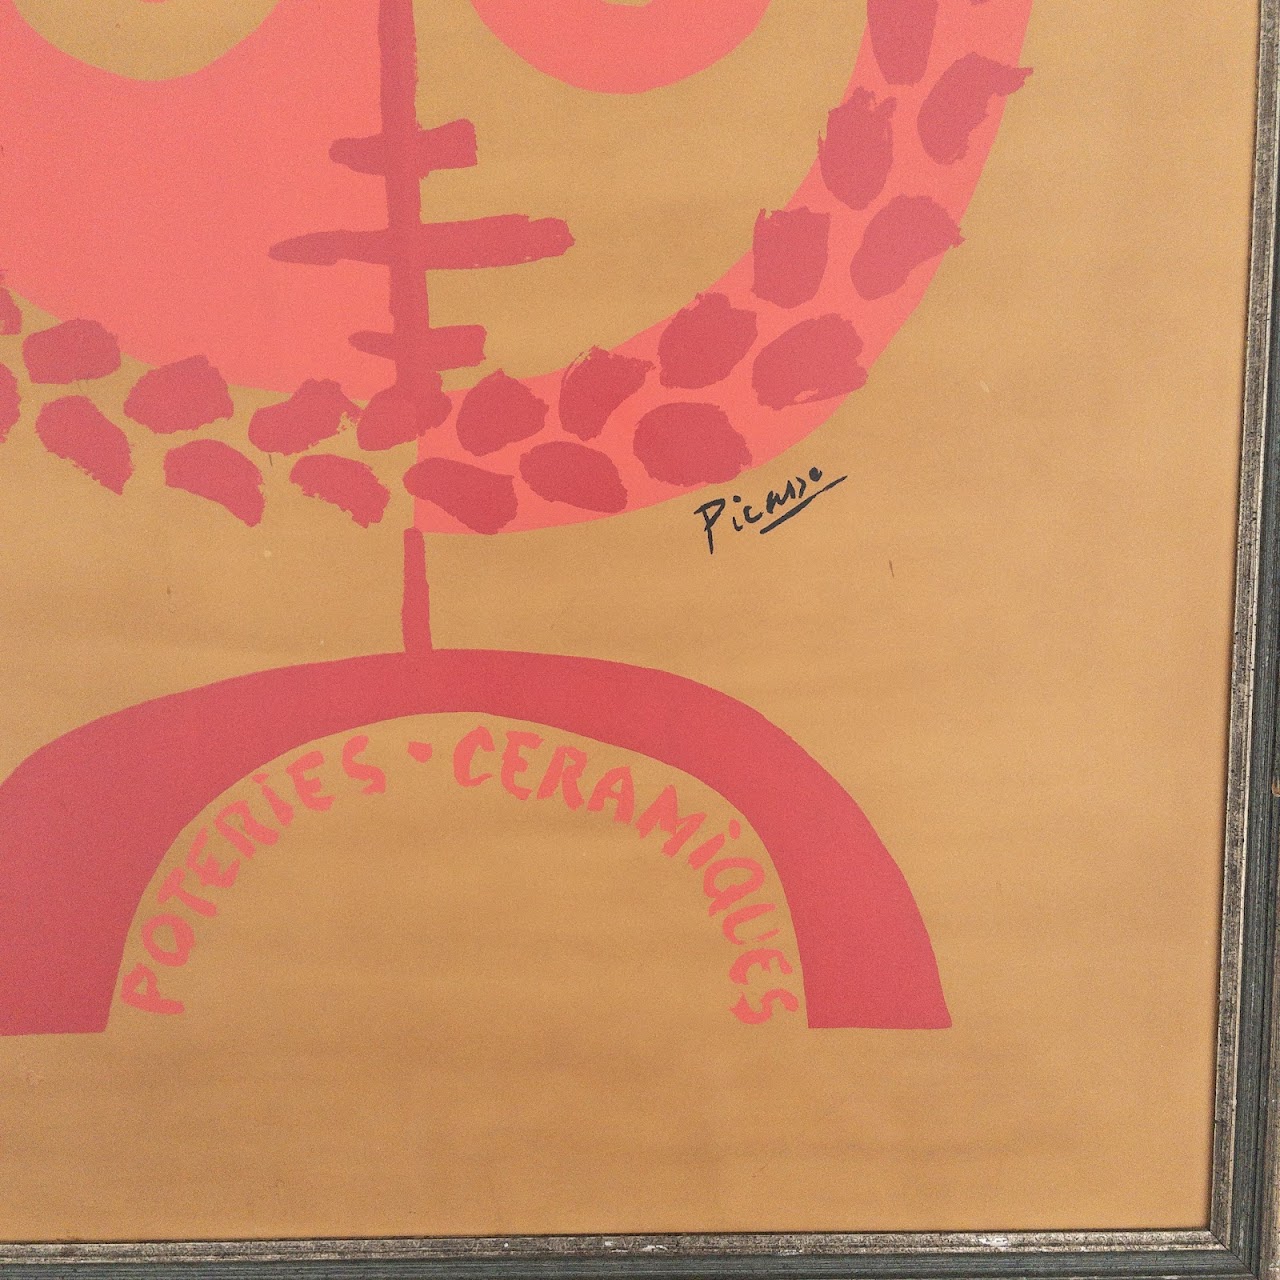 Picasso 'Poteries - Ceramiques' Galerie Triel Exhibition Serigraph Poster